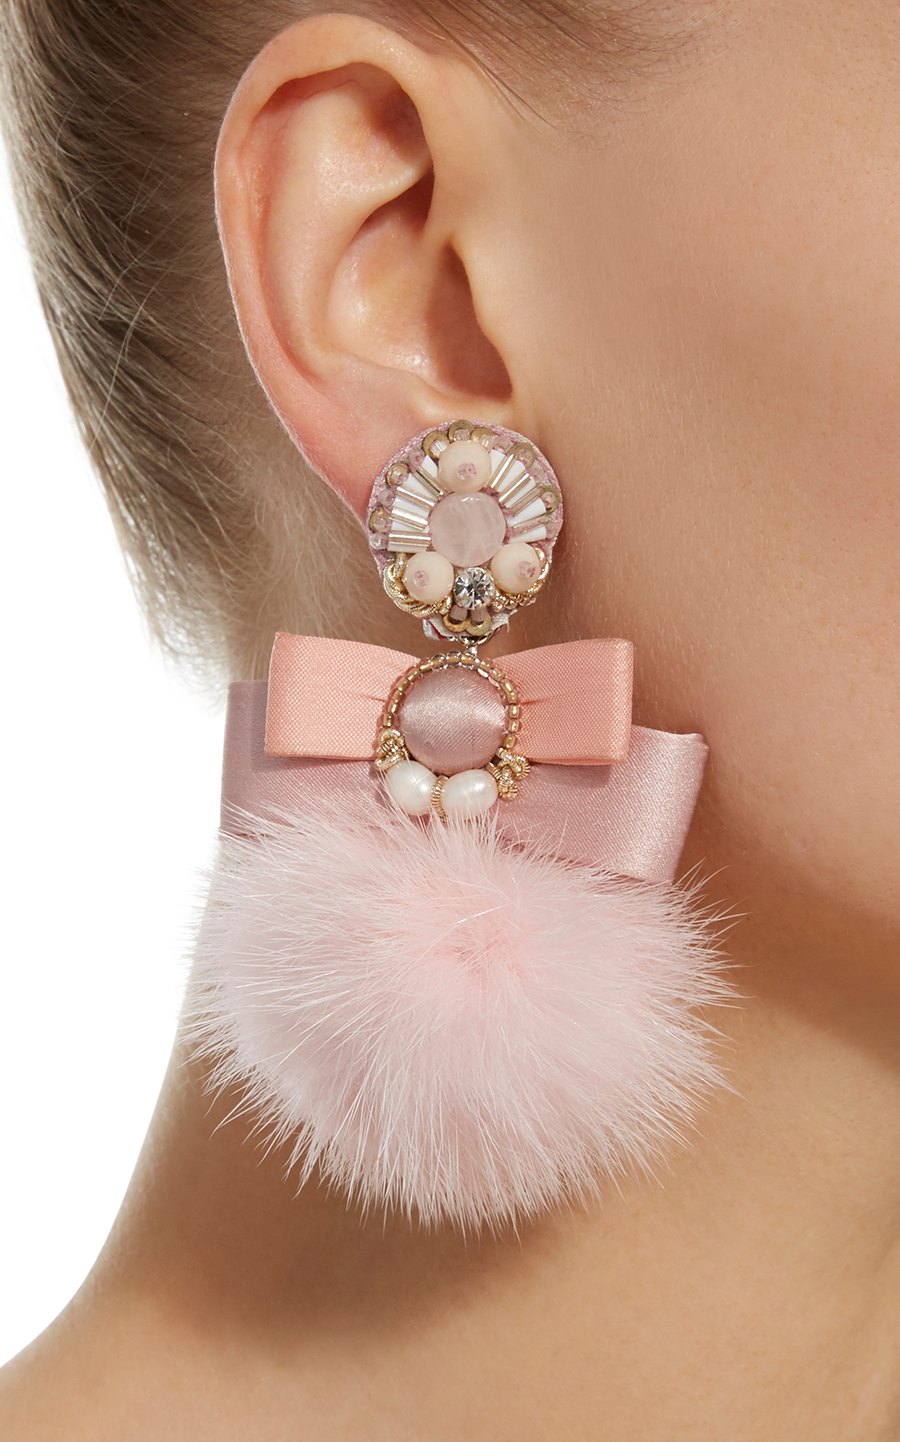 Pale Pink Fur Pom Ranjana Khan Earrings Stylish clip on earrings